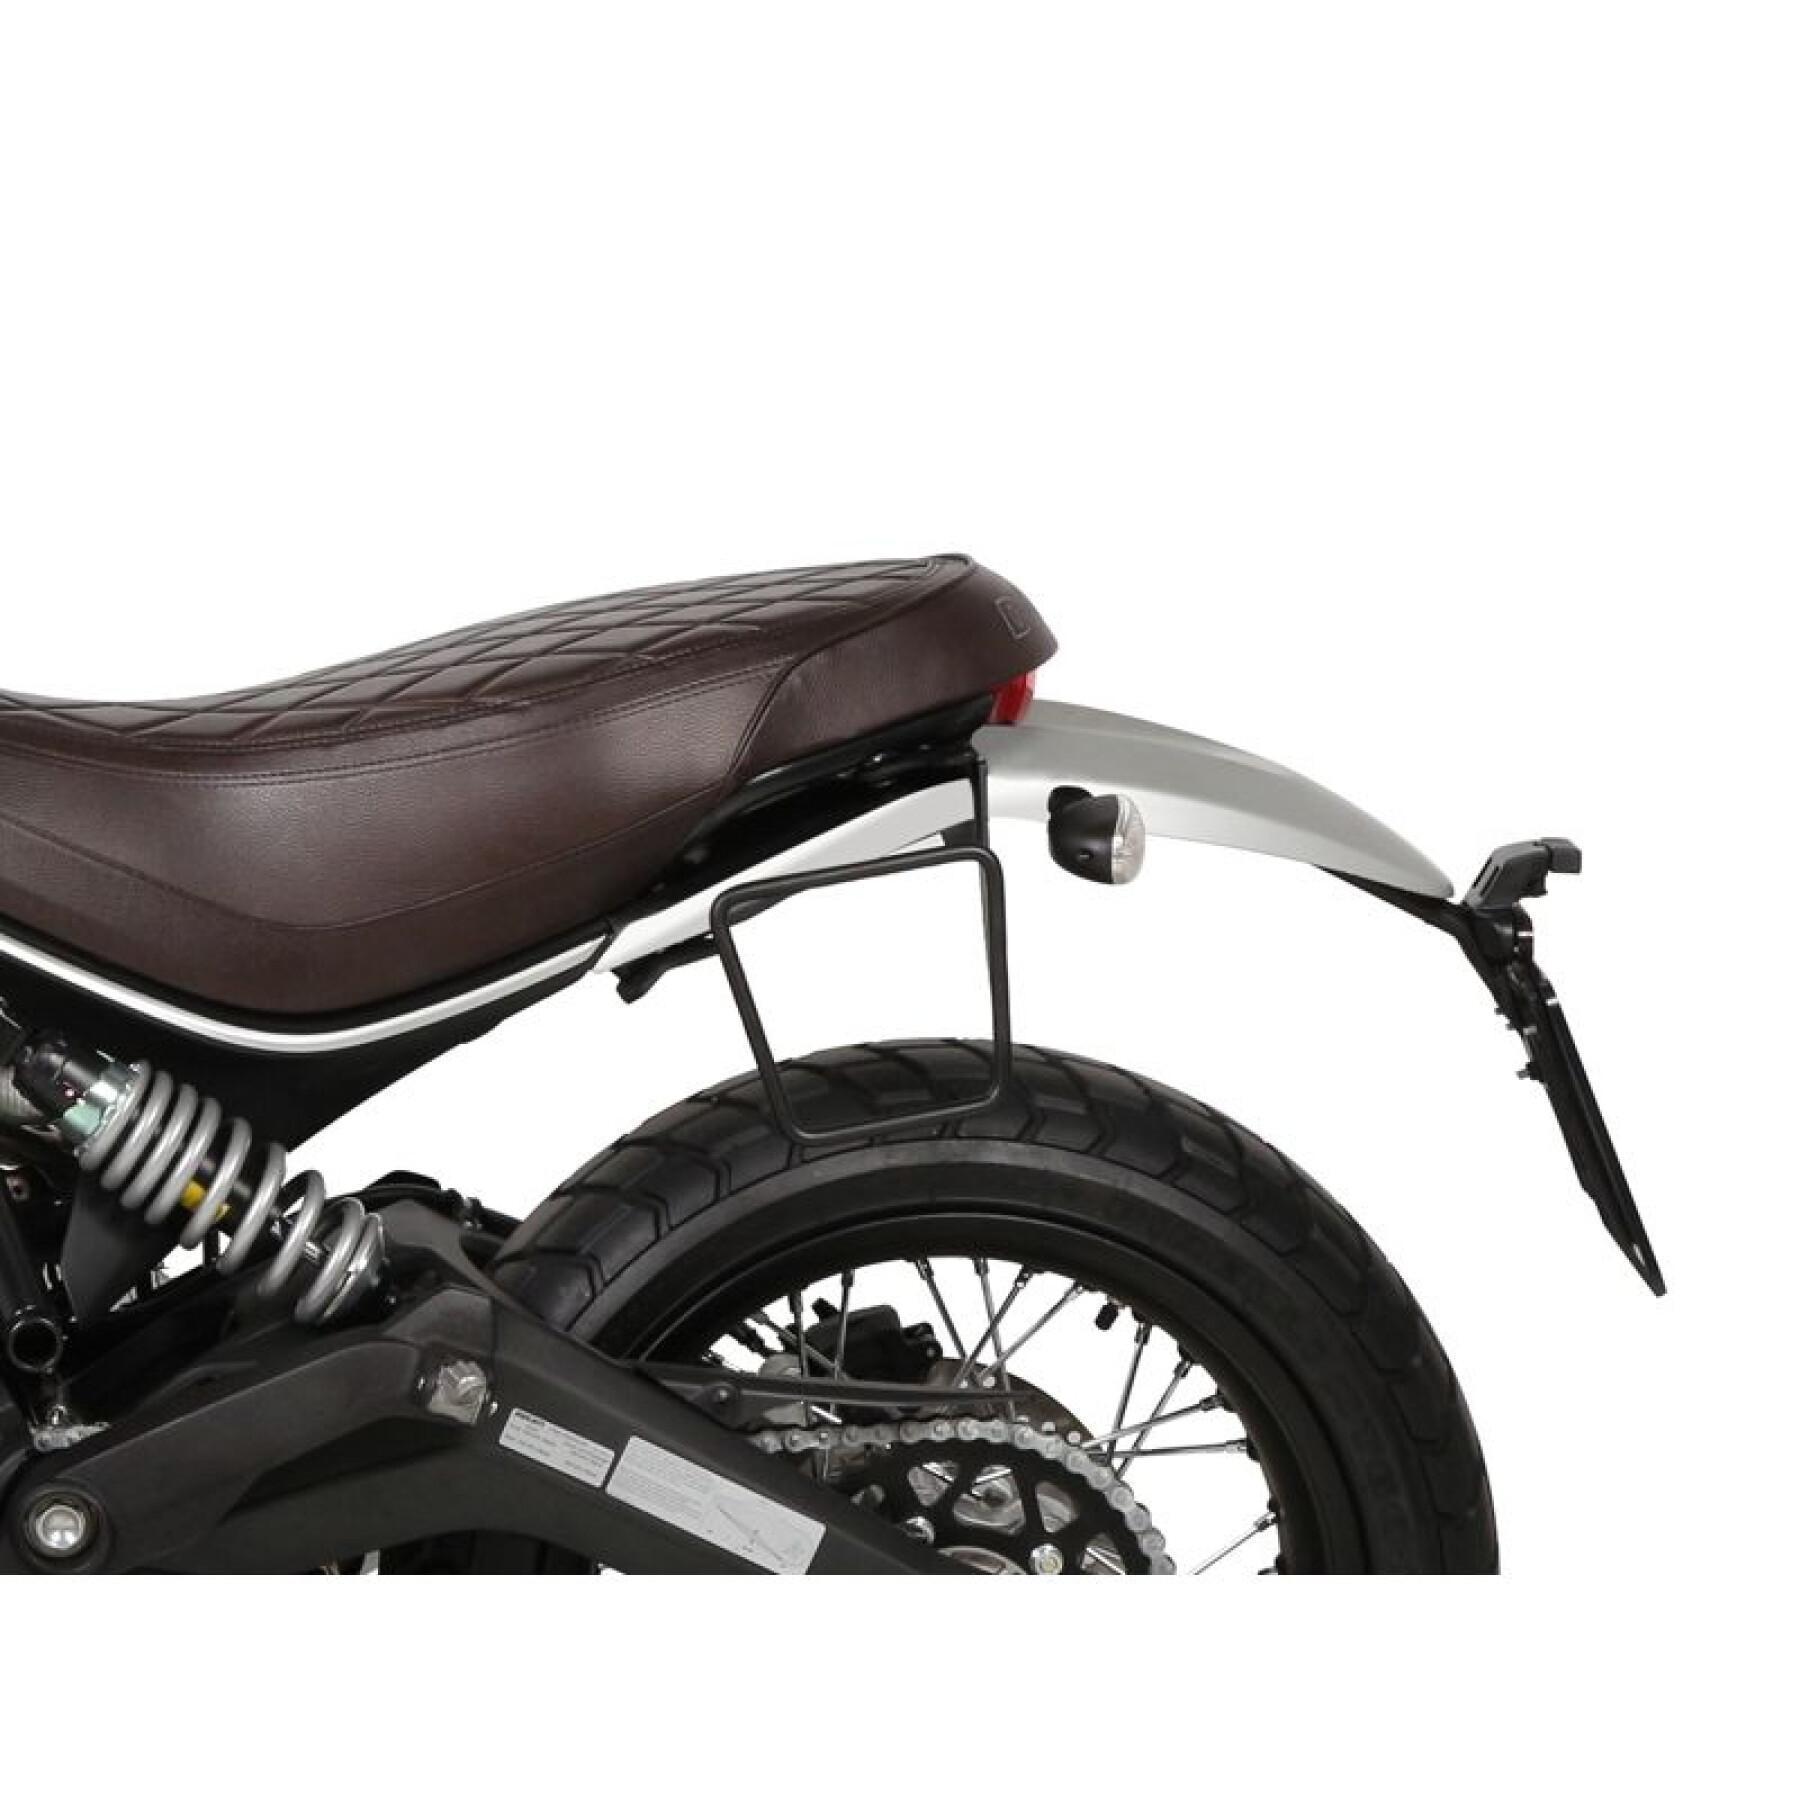 Portaborse laterale moto Shad SR Séries Café Racer Ducati Scrambler 800 Icon/Classic (da 15 a 21)